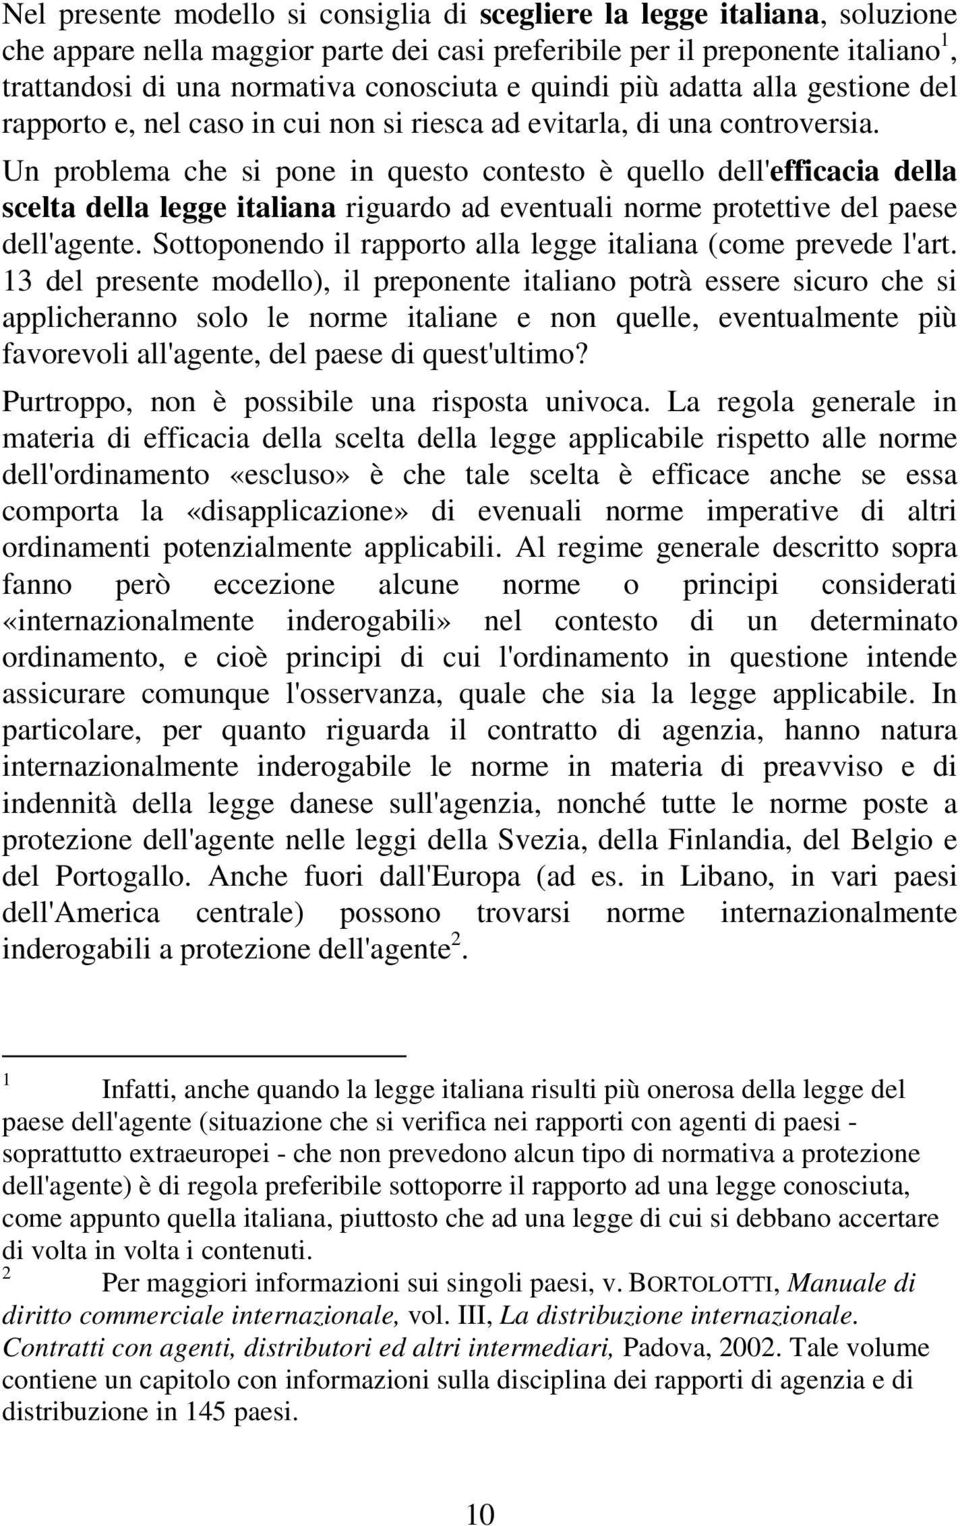 Un problema che si pone in questo contesto è quello dell'efficacia della scelta della legge italiana riguardo ad eventuali norme protettive del paese dell'agente.